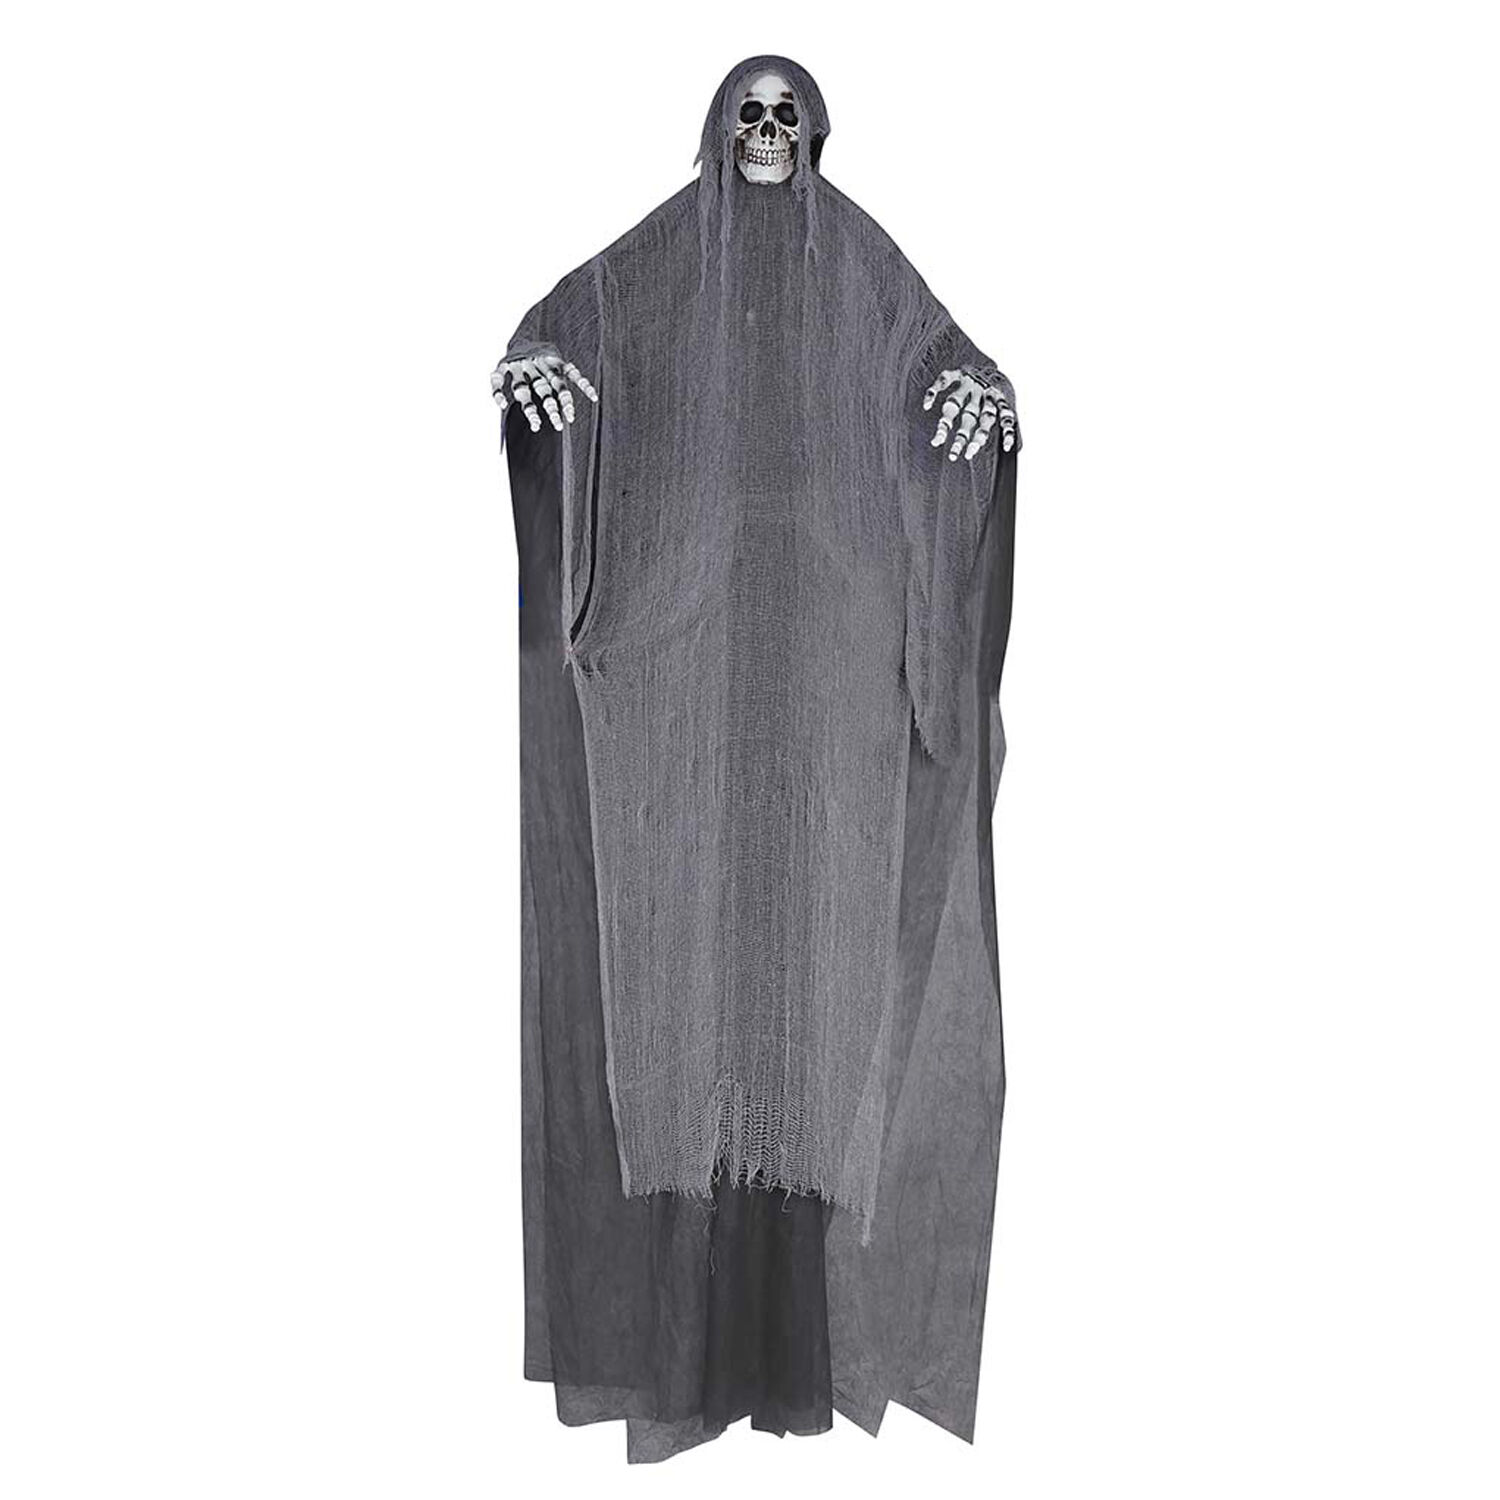 NEU Halloween-Deko-Figur Riesen-Skelett, ca. 320cm